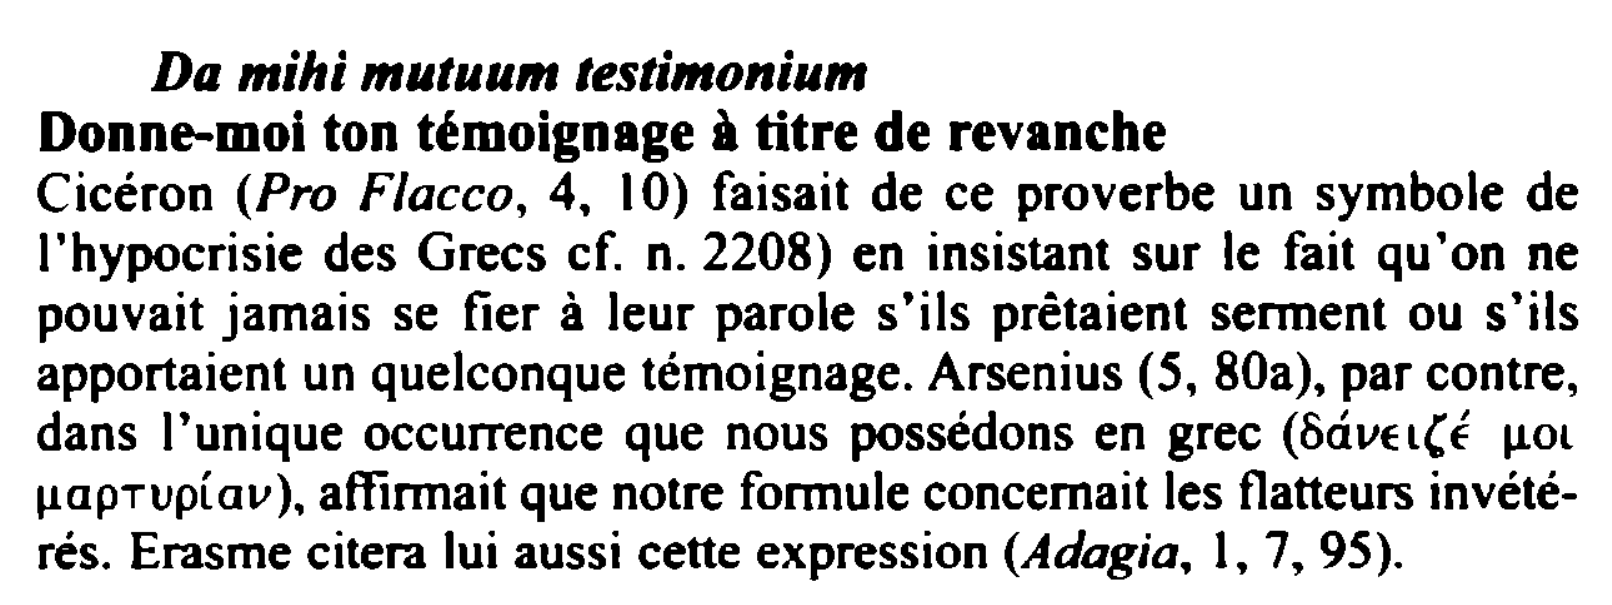 Prévisualisation du document Da mihi mutuum testimonium

Donne-moi ton témoignage à titre de revanche
Cicéron (Pro Flacco, 4, 10) faisait de ce proverbe...